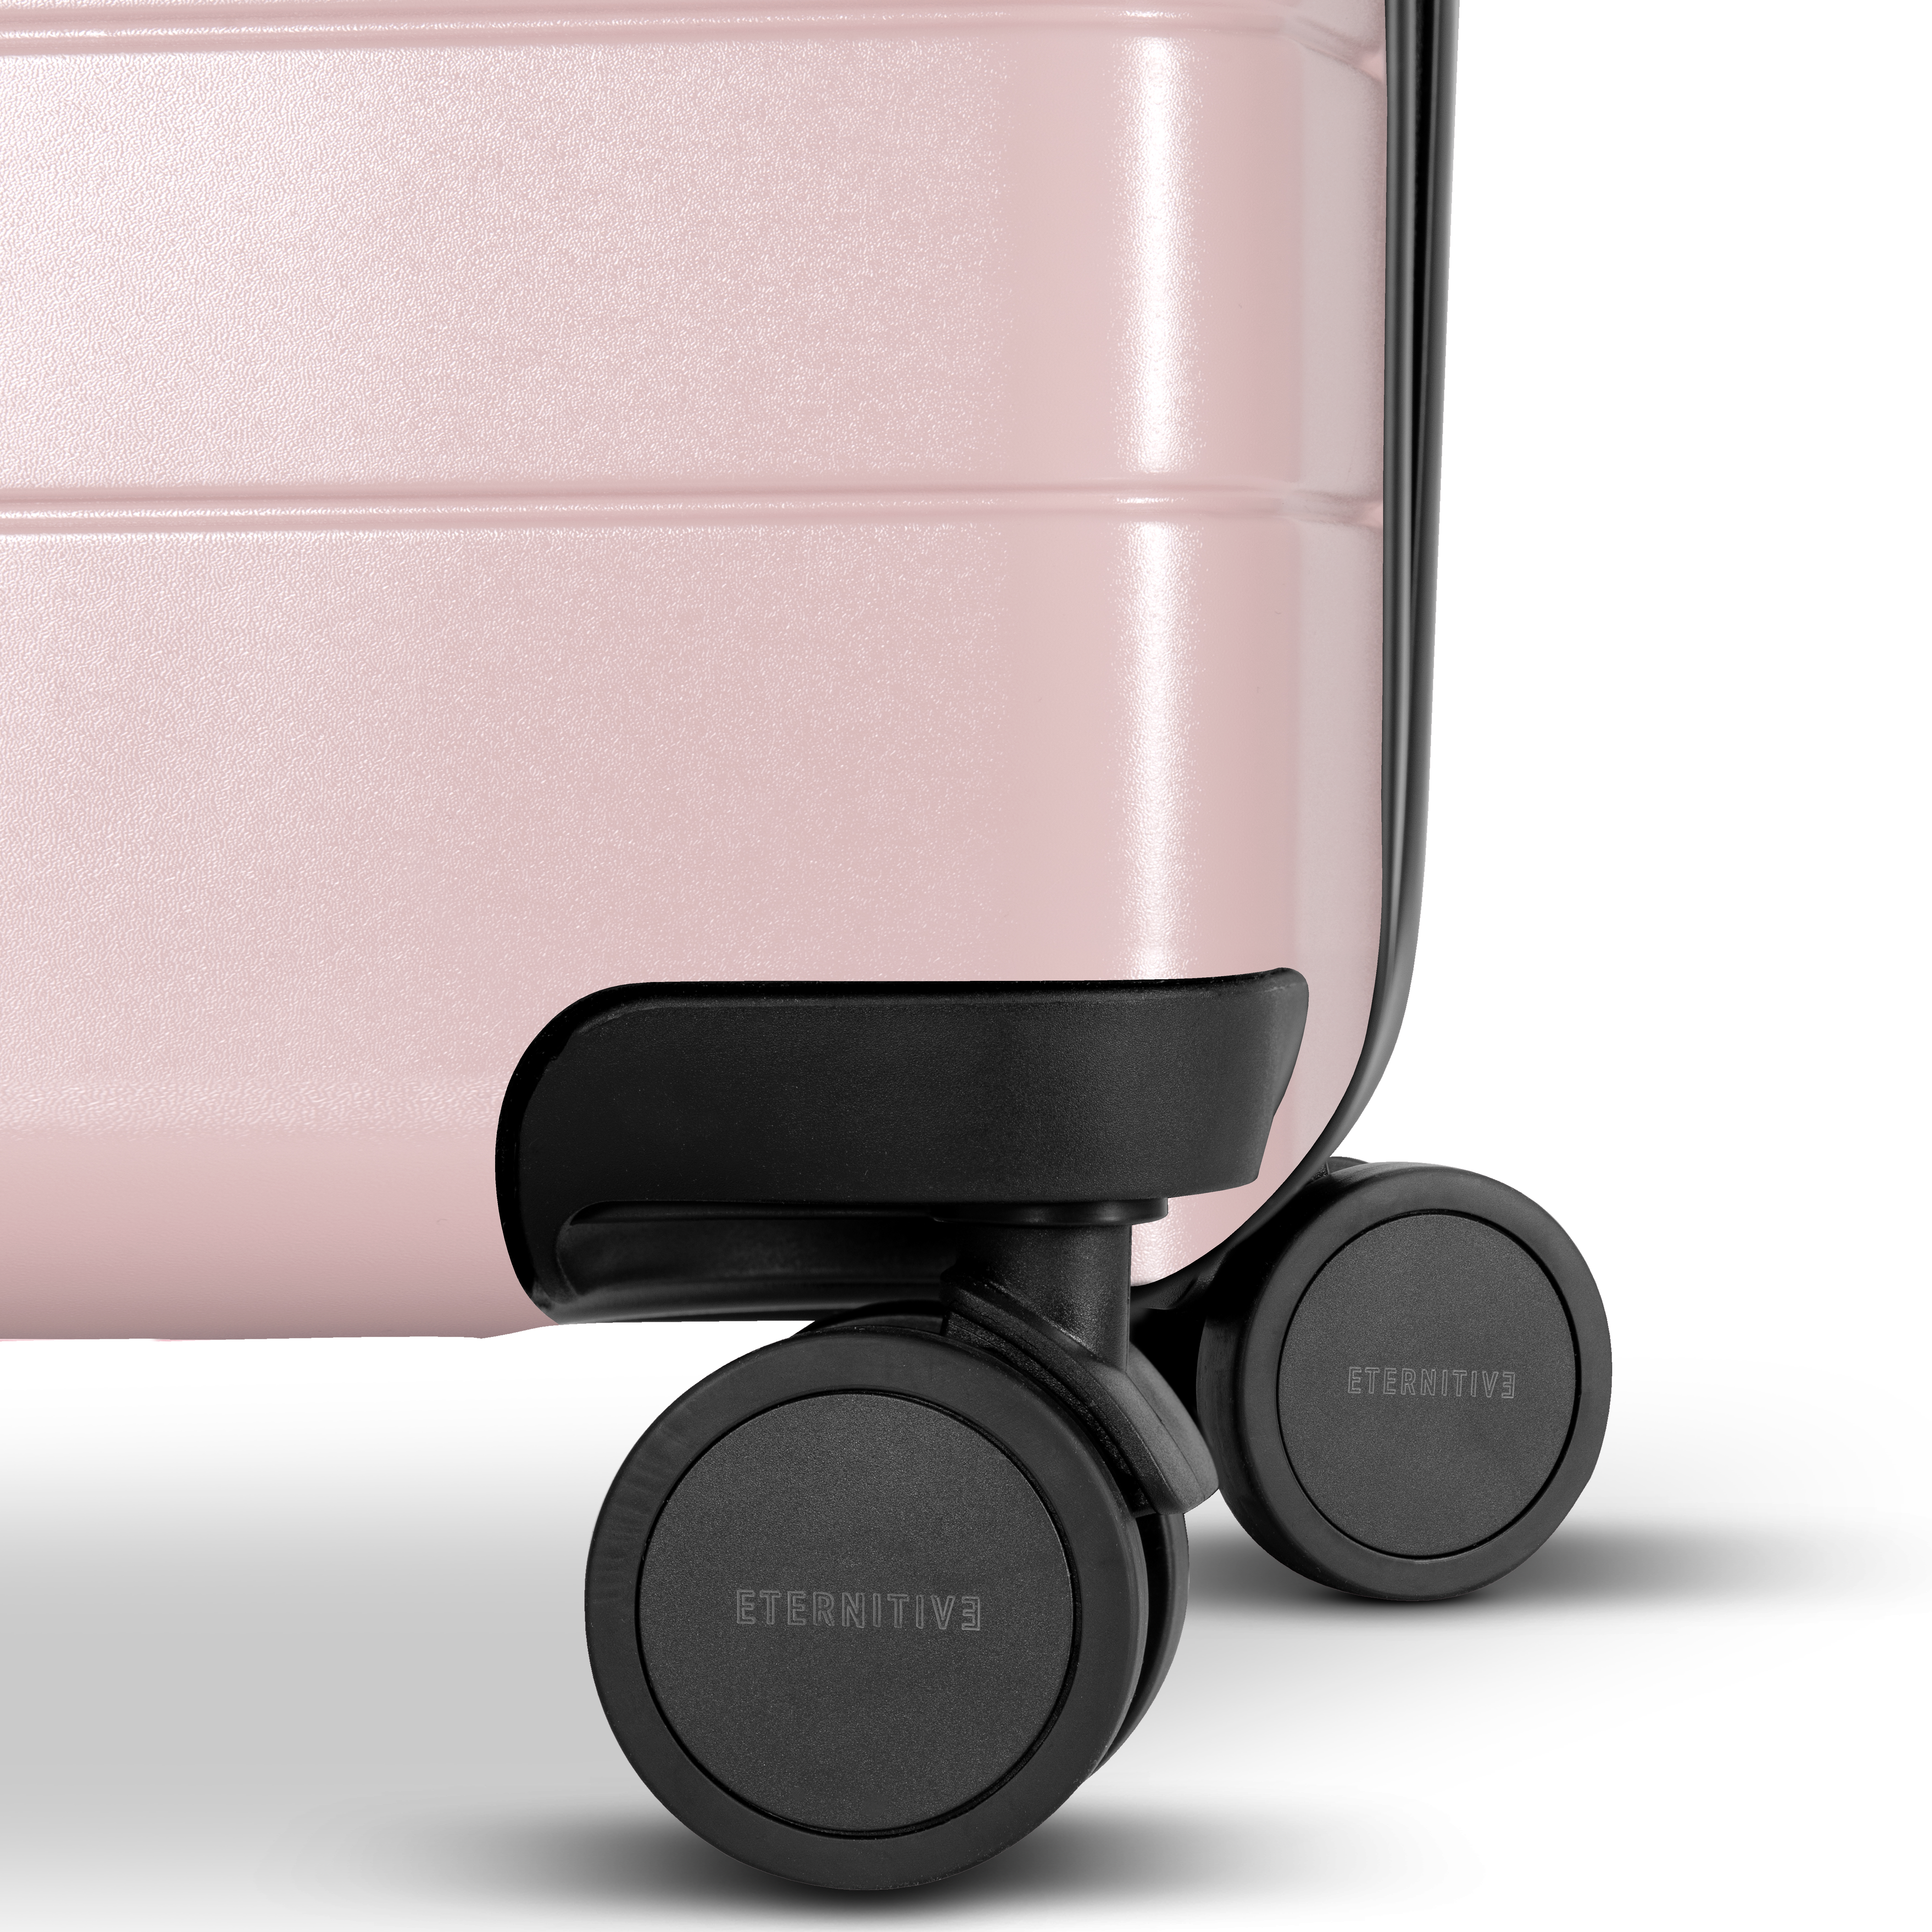 E3 Großer Koffer pink